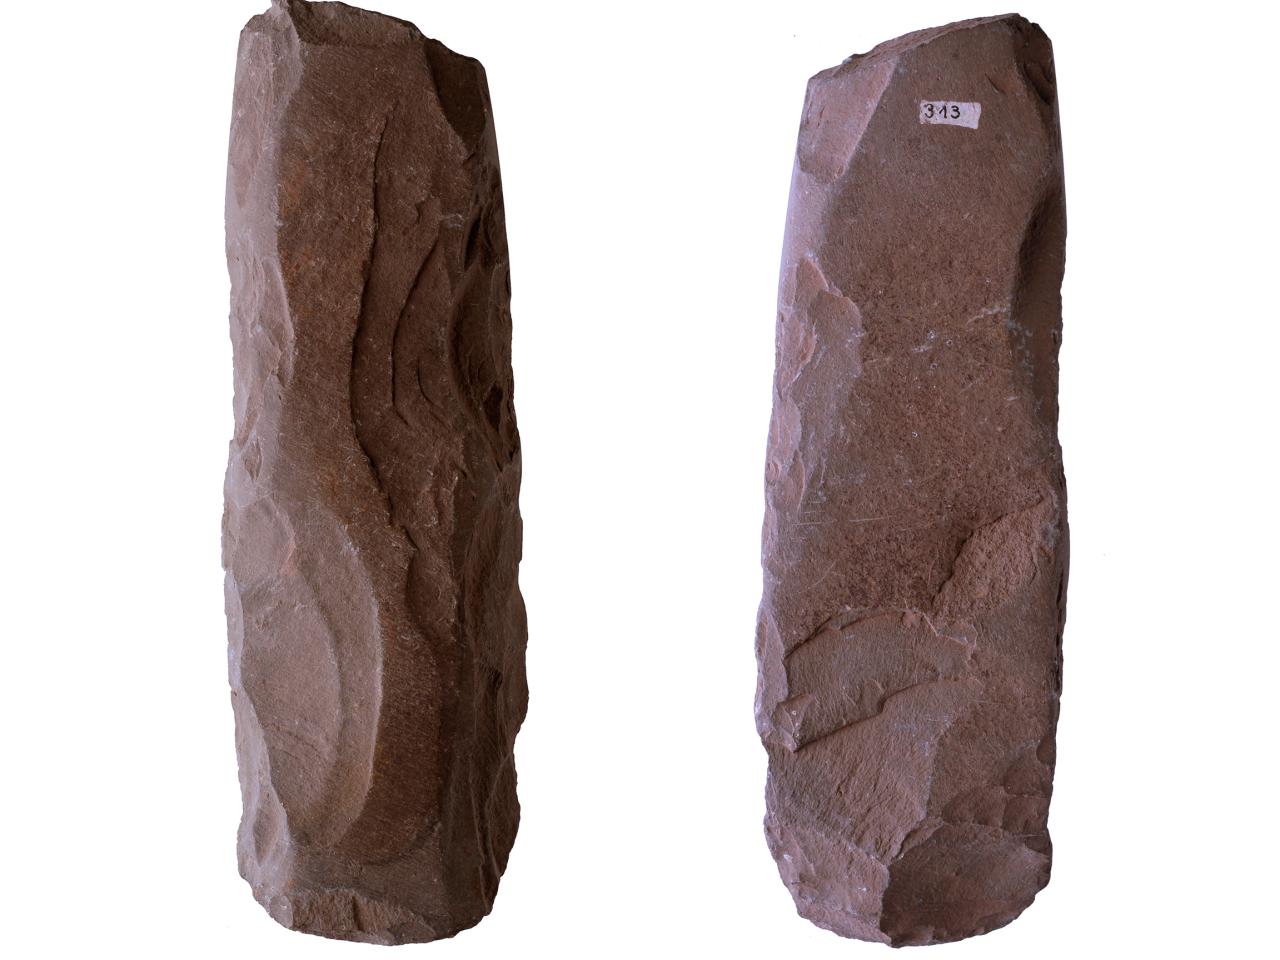 Azuela o Toki de basalto delgada, de sección transversal cuadrangular o semi-redondeada, sin enmangue